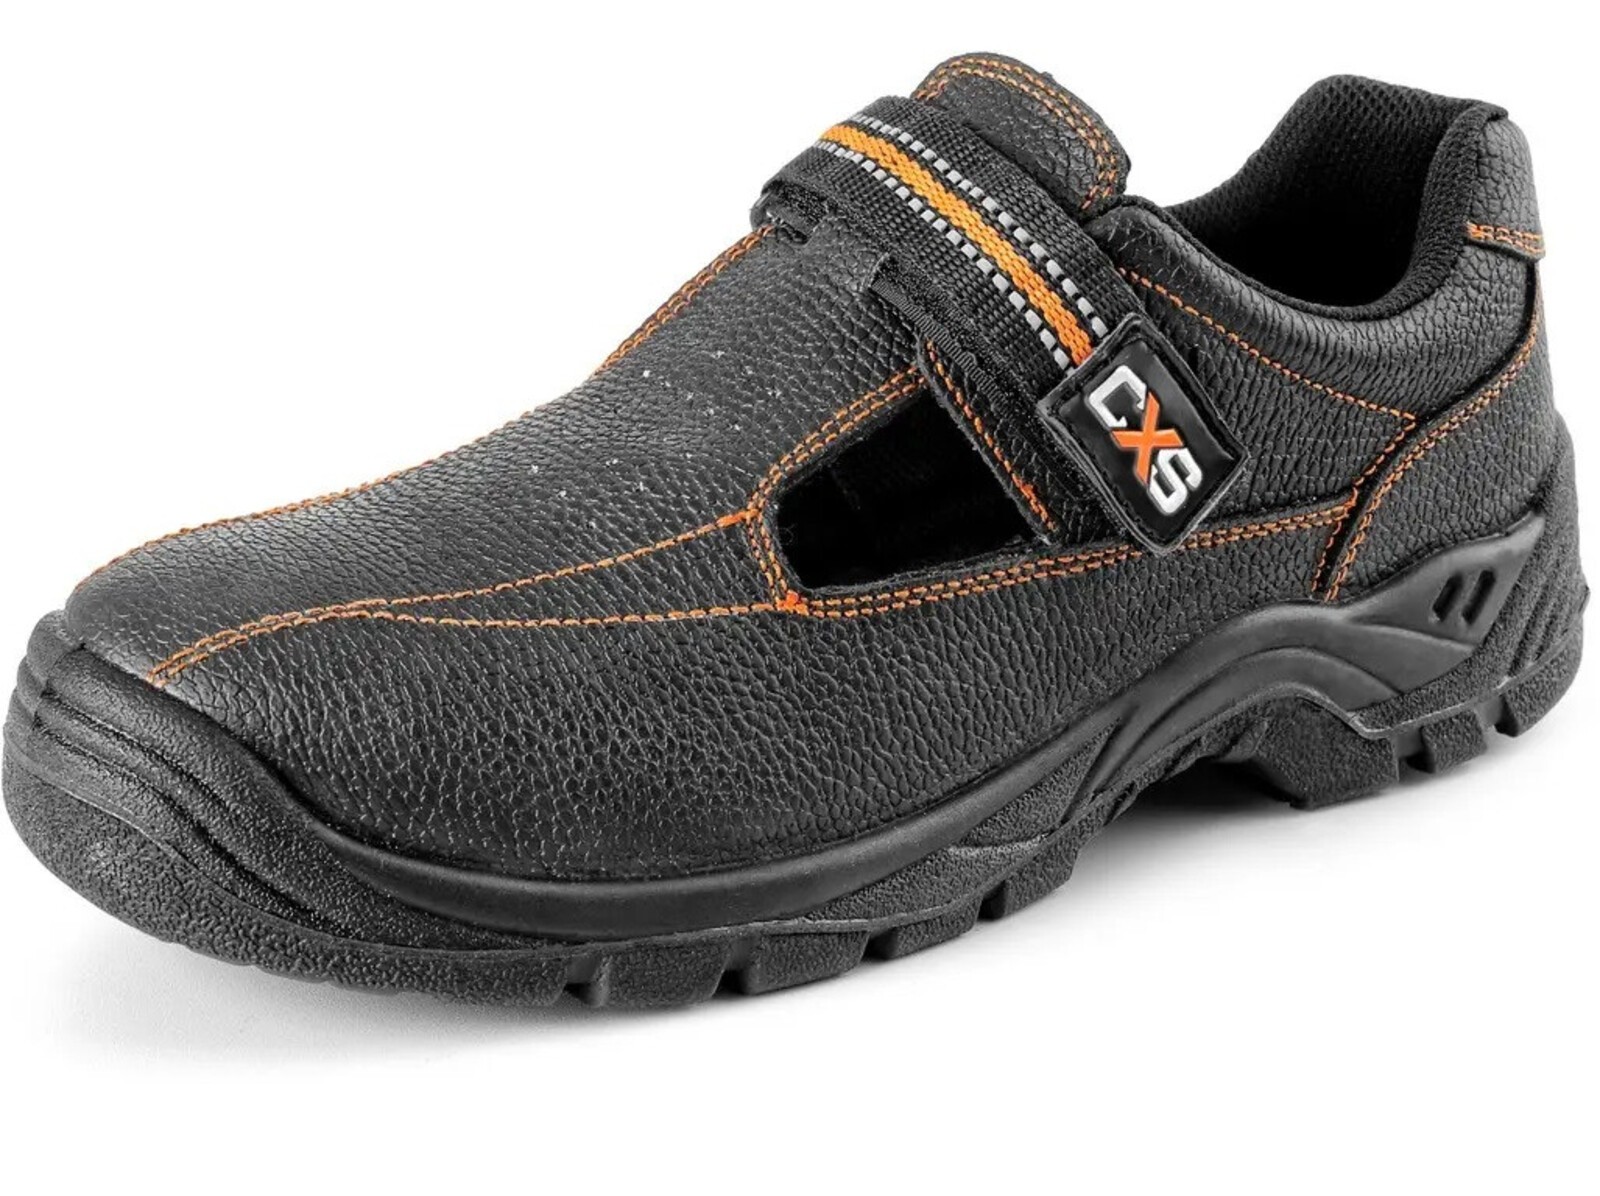 Bezpečnostné sandále CXS Stone Nefrit S1 SRC - veľkosť: 39, farba: čierna/oranžová